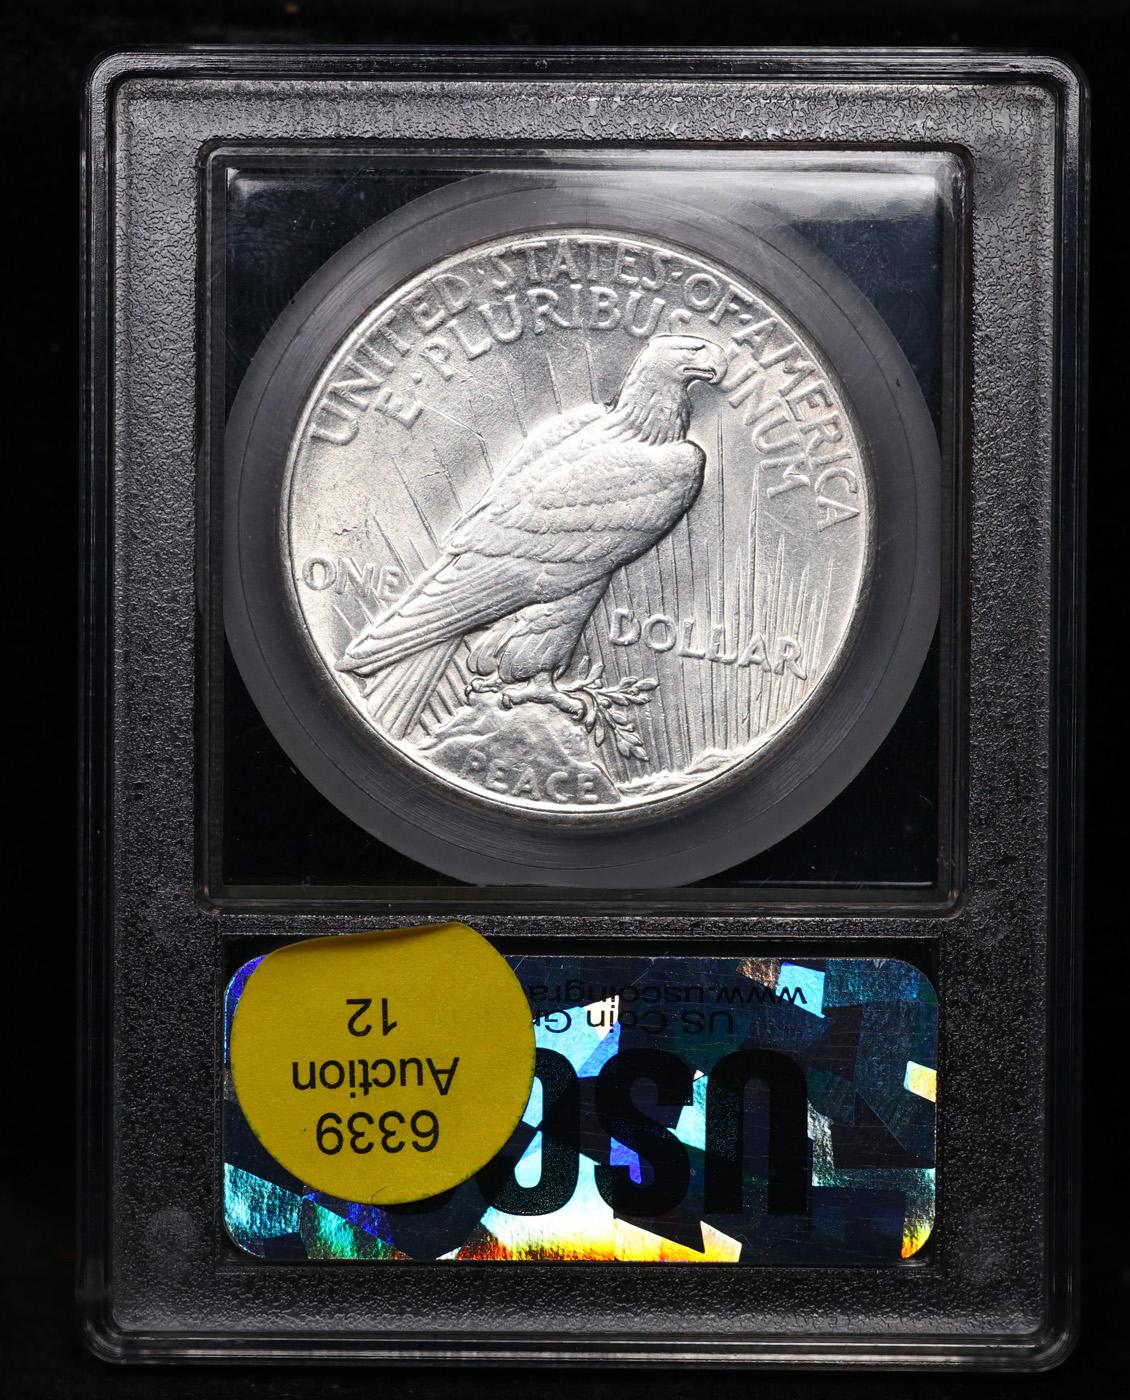 ***Auction Highlight*** 1927-p Peace Dollar 1 Graded Choice+ Unc By USCG (fc)